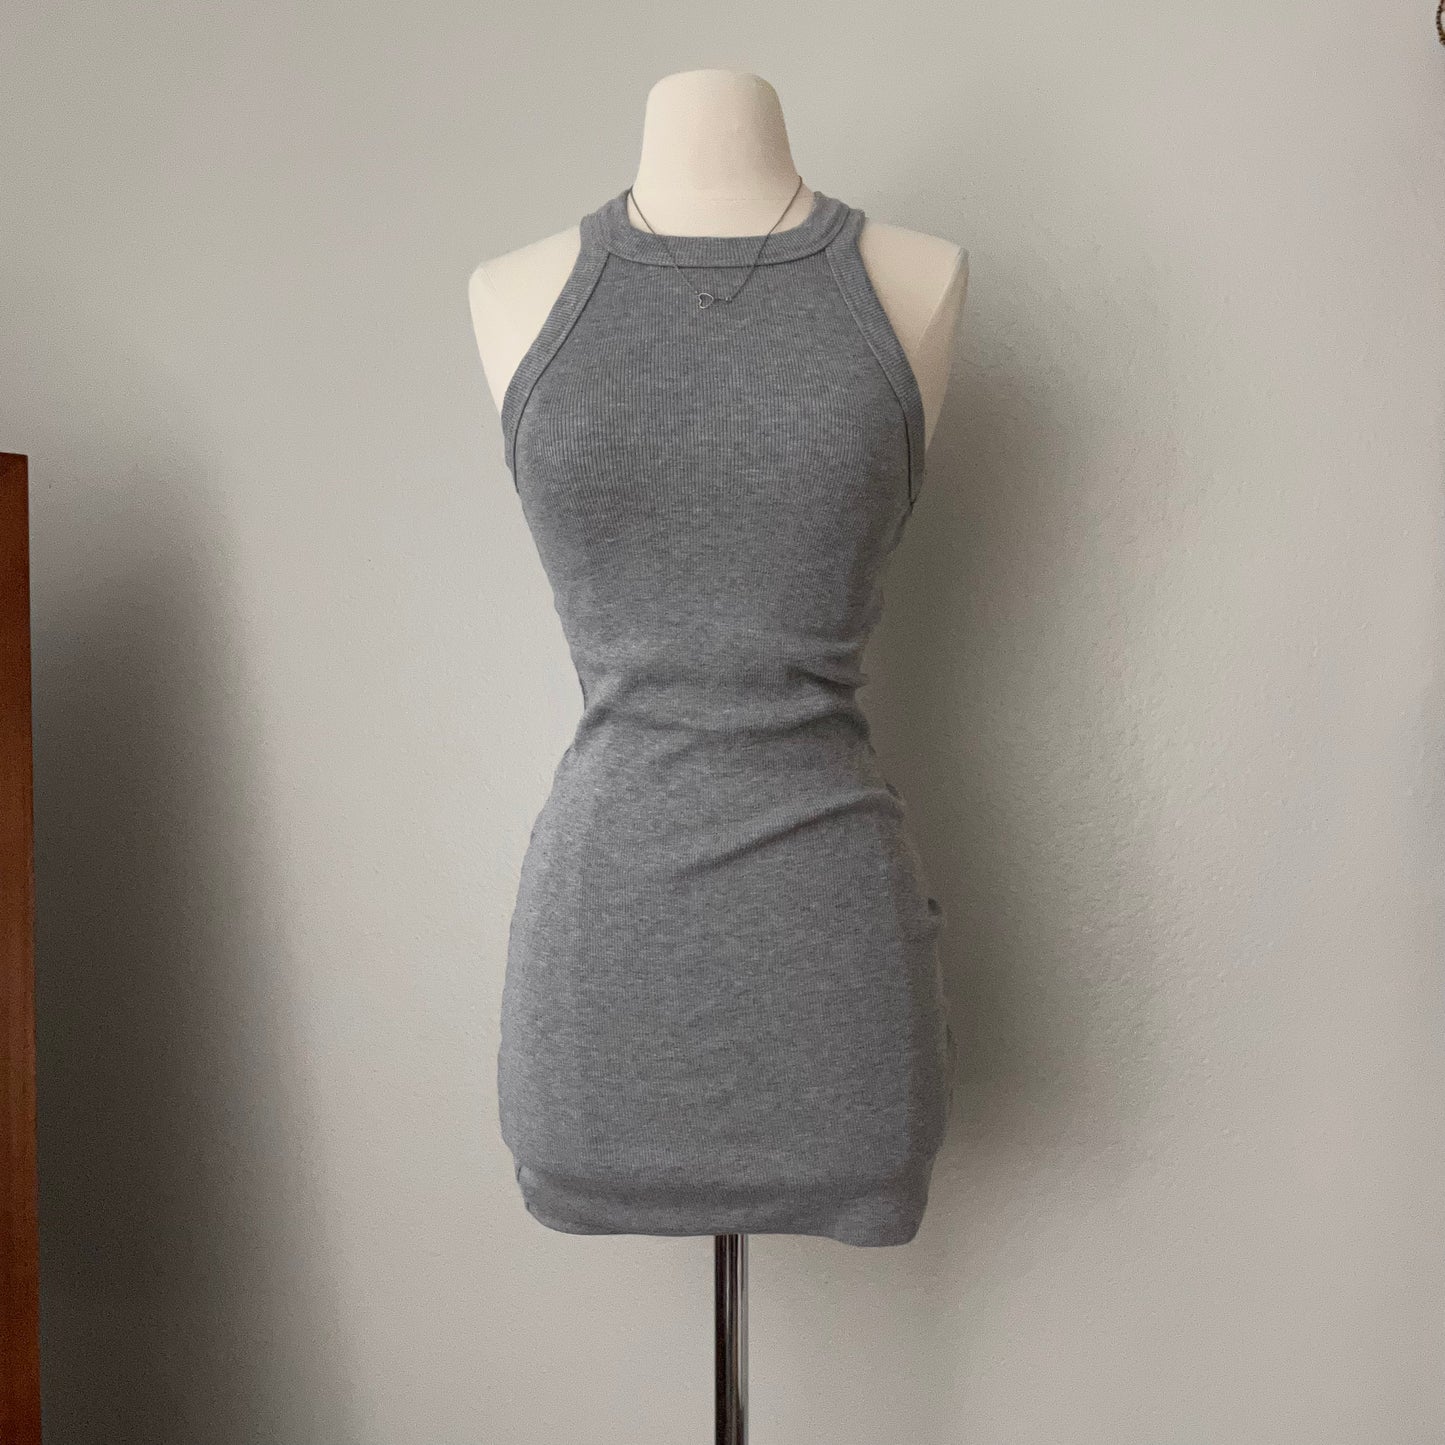 Ribbed Gray Tank Sleeveless Dress (M)